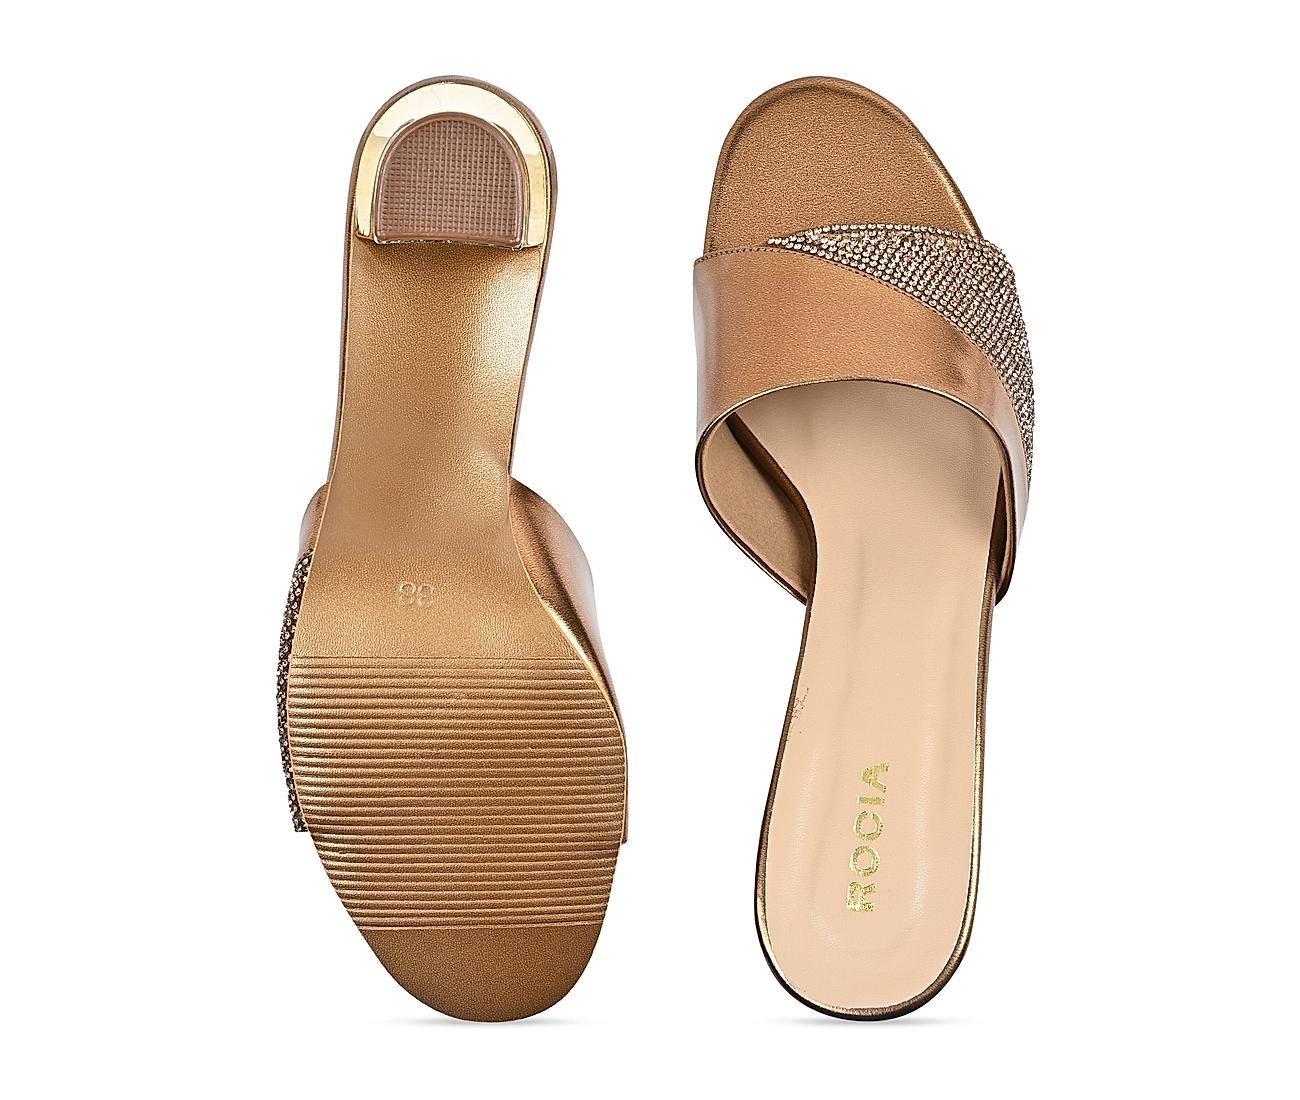 Frame Women's Open Toe Slip-On Block Block Heels Sandals Brown Size 8. -  Shop Linda's Stuff